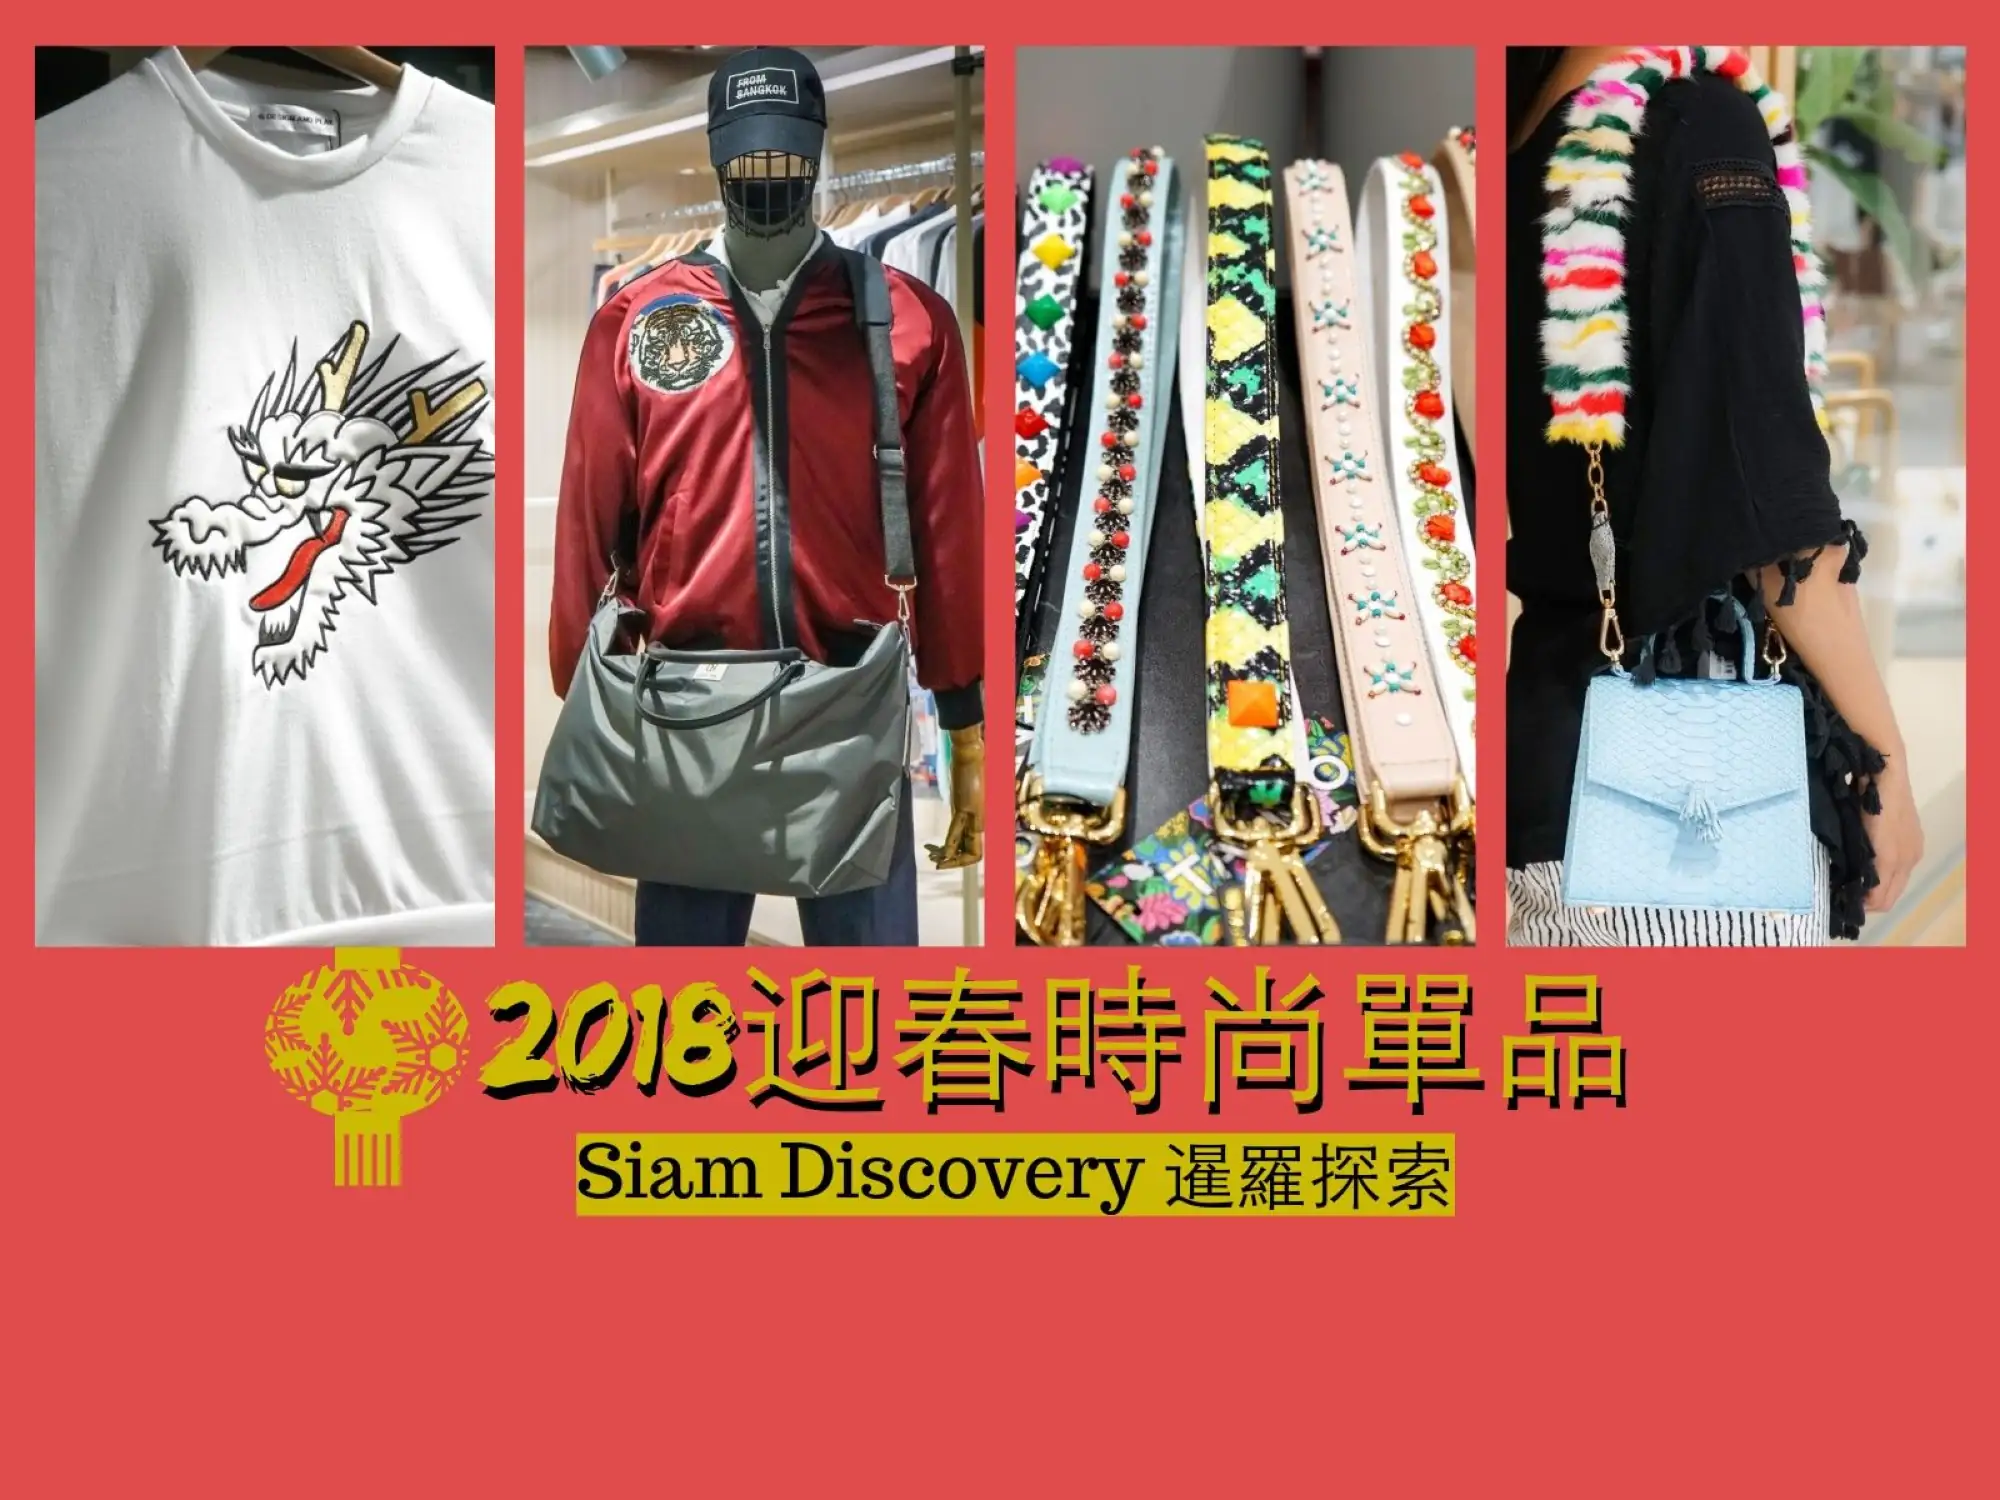 2018迎春節 曼谷潮流聖地 暹羅探索購物中心Siam Discovery 新年18件單品讓你走春如走伸展台